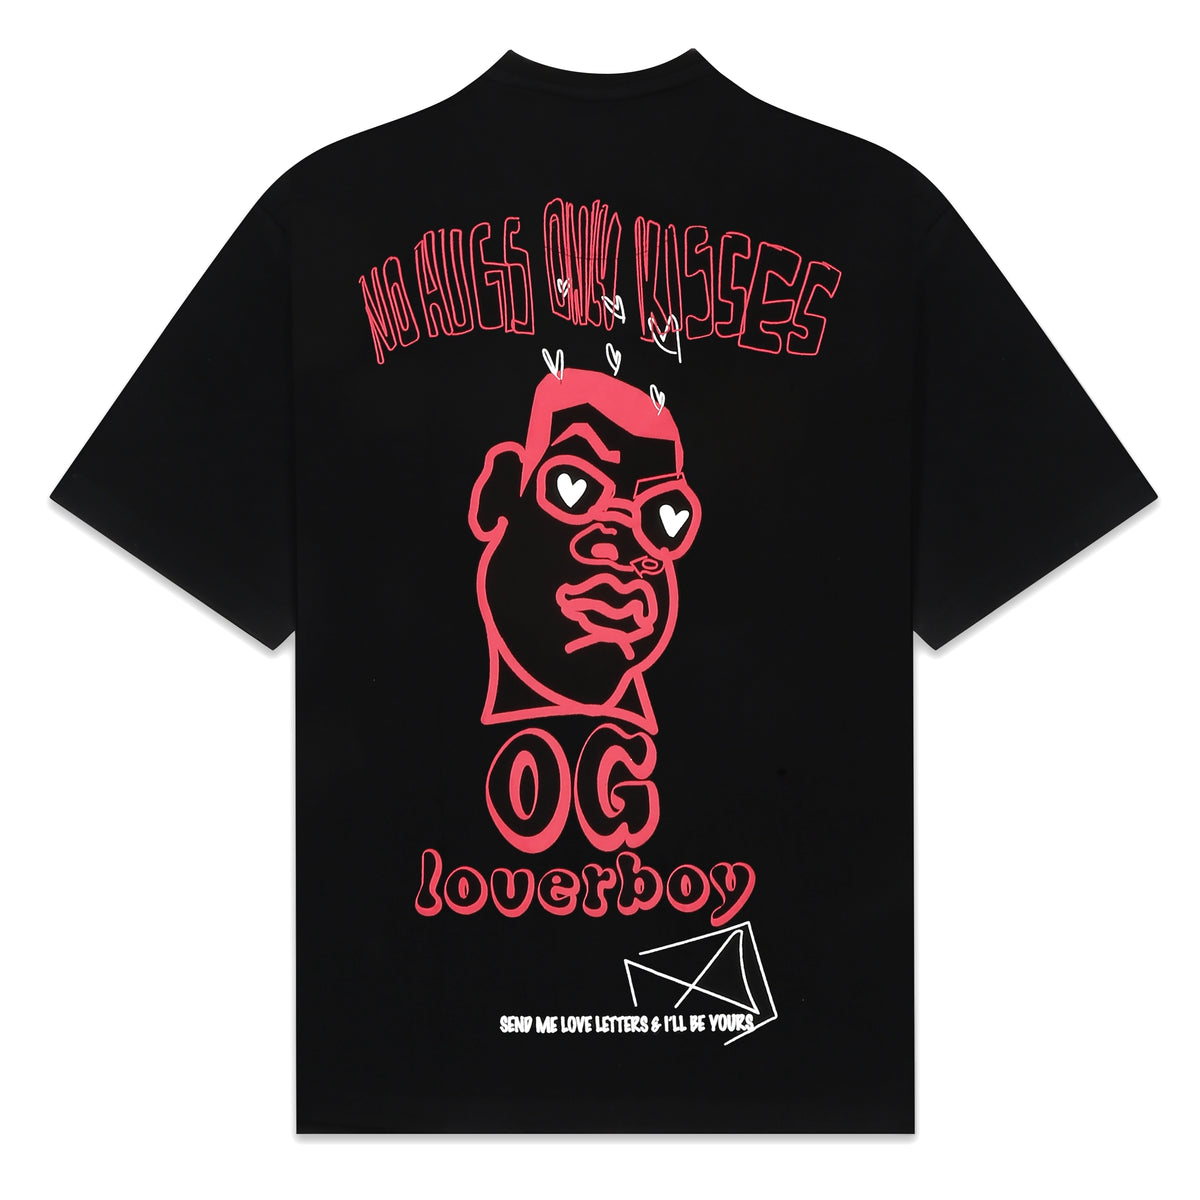 OG Loverboy T-Shirt